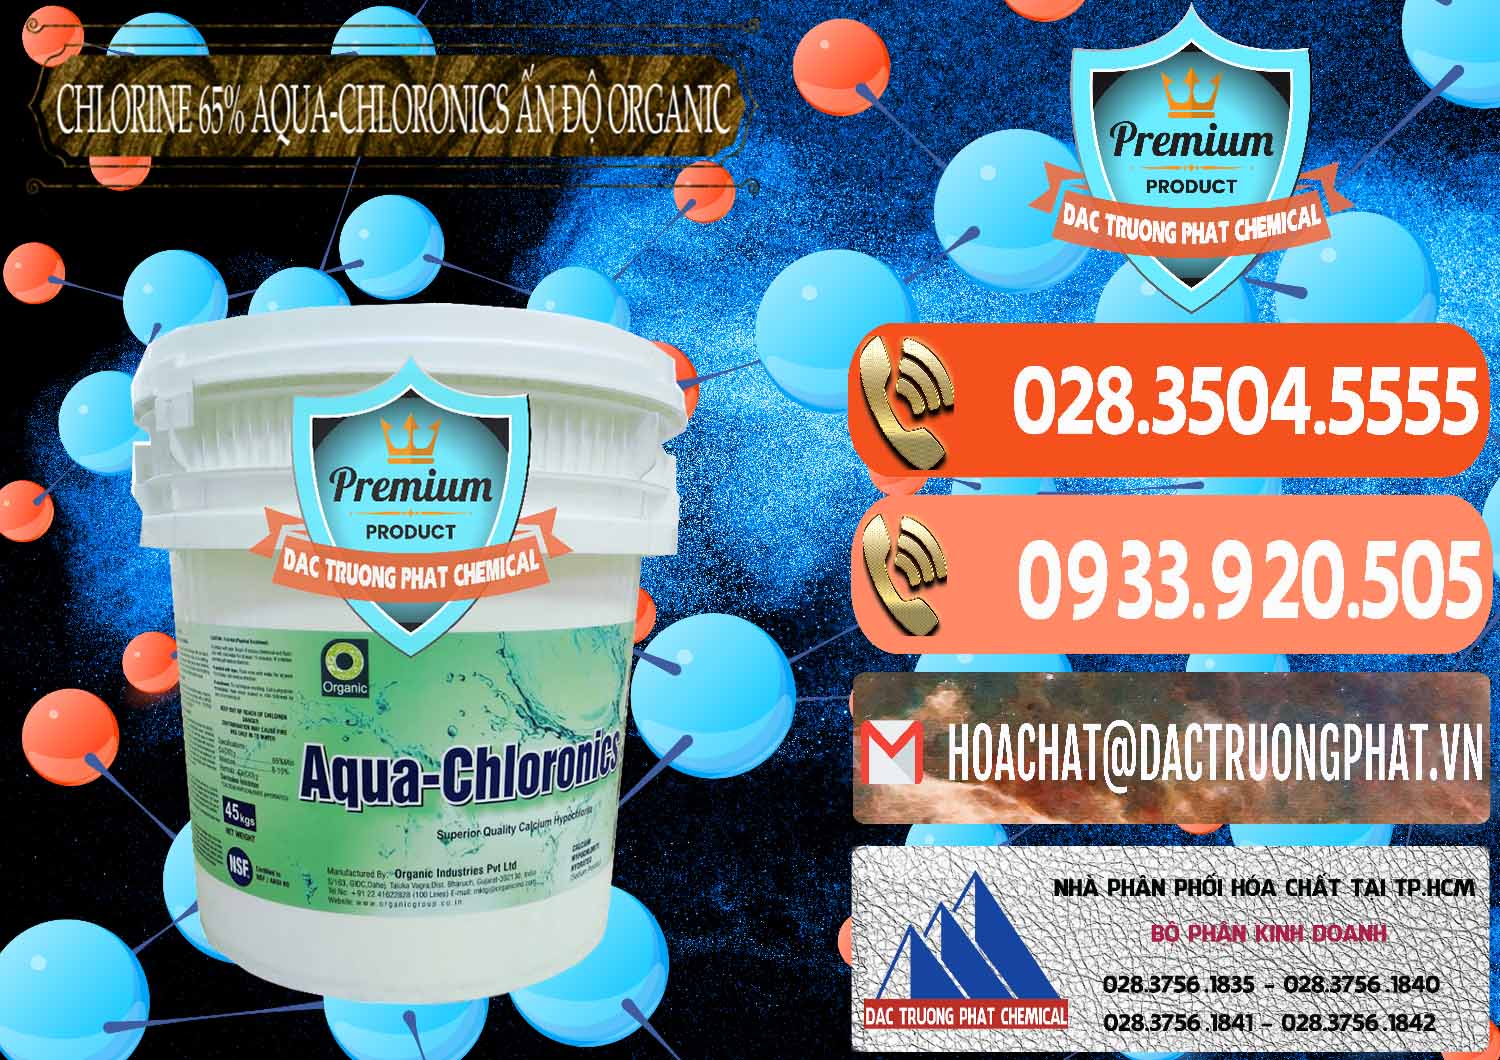 Nơi kinh doanh và bán Chlorine – Clorin 65% Aqua-Chloronics Ấn Độ Organic India - 0210 - Đơn vị chuyên phân phối & nhập khẩu hóa chất tại TP.HCM - hoachatmientay.com